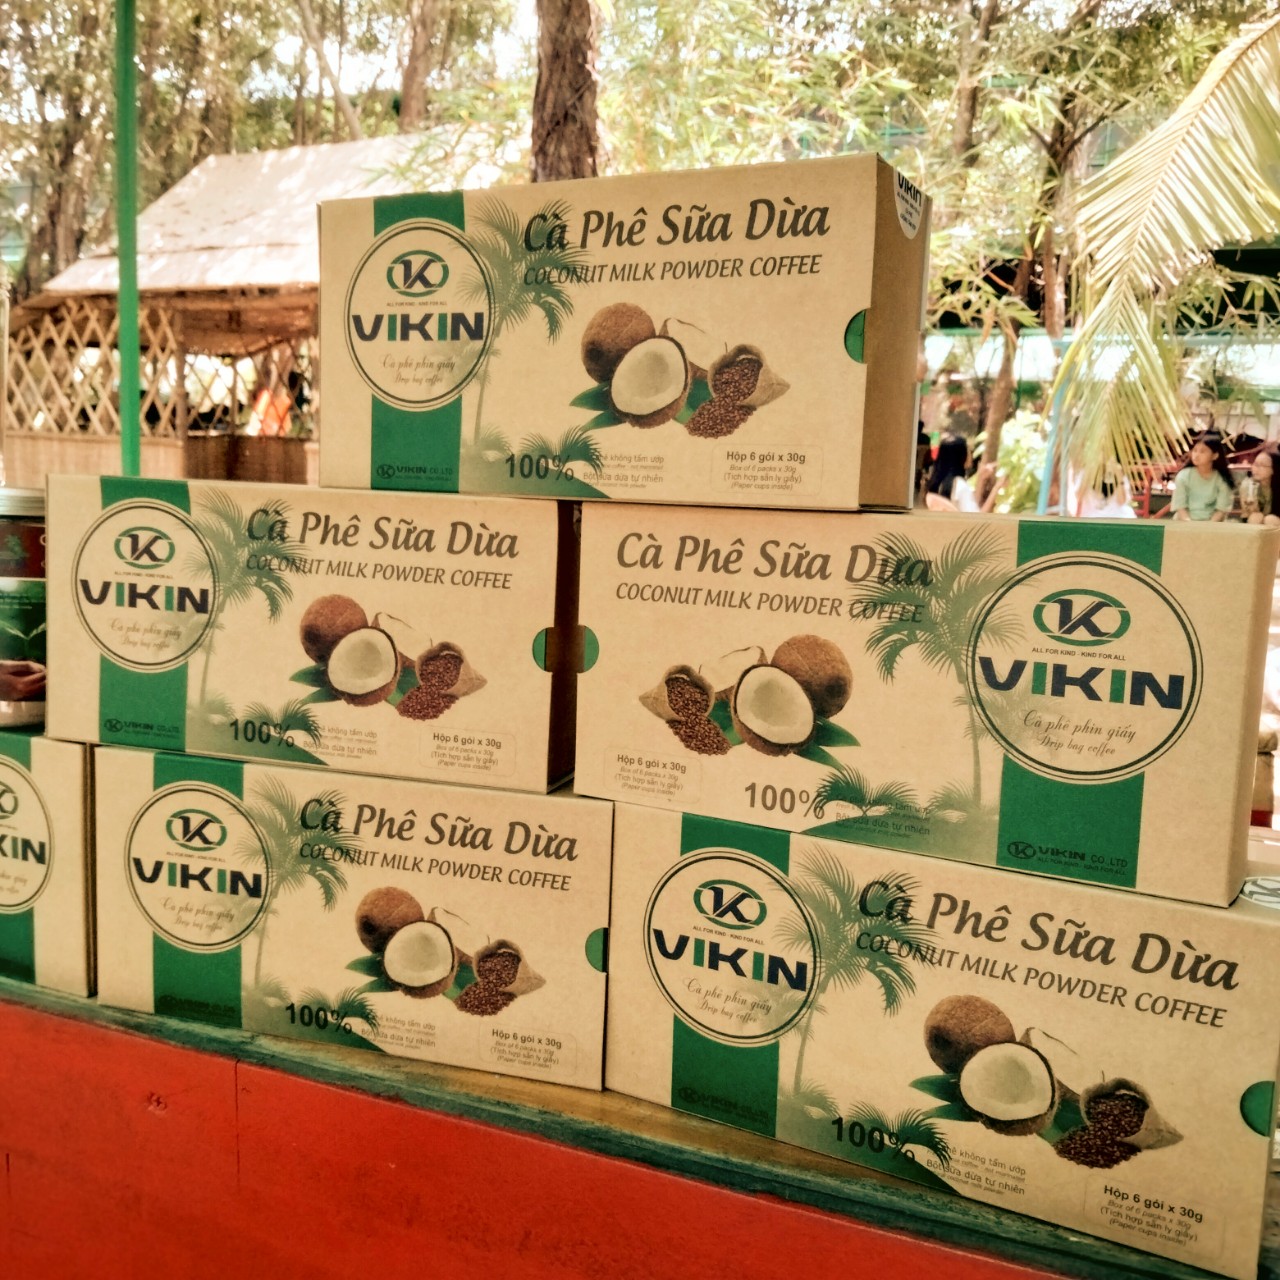 Cà Phê Sữa Dừa Phin Giấy VIKIN, hộp 6 gói Chuẩn Gu từ cà phê hạt.